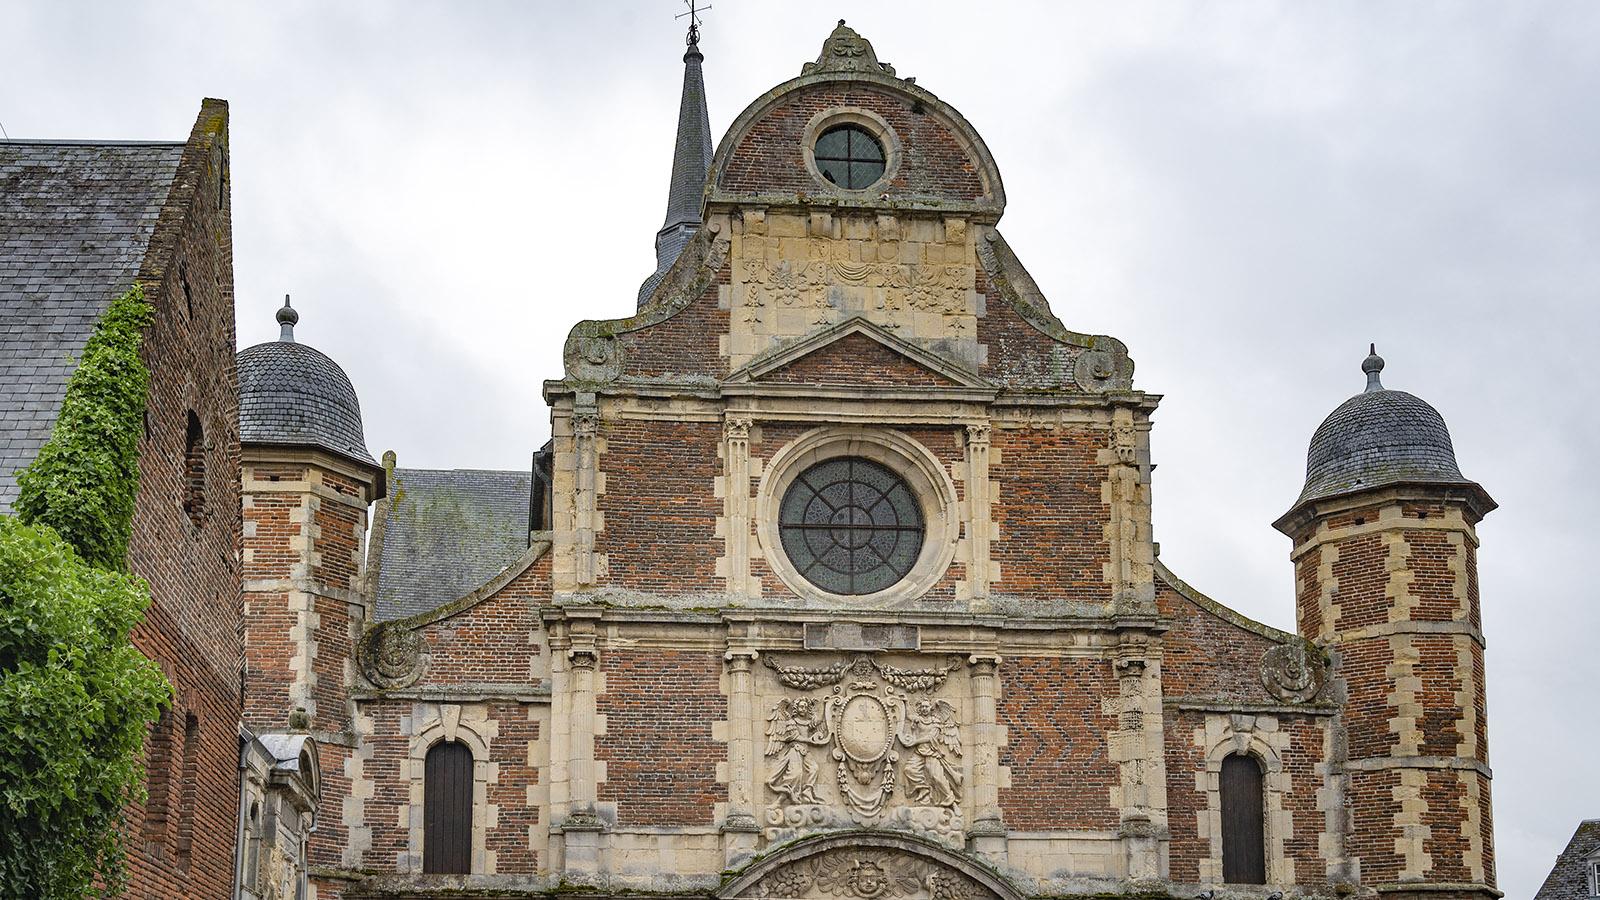 Naturstein und Ziegel prägen die Architektur der Jesuitenkapelle. Foto: Hilke Maunder